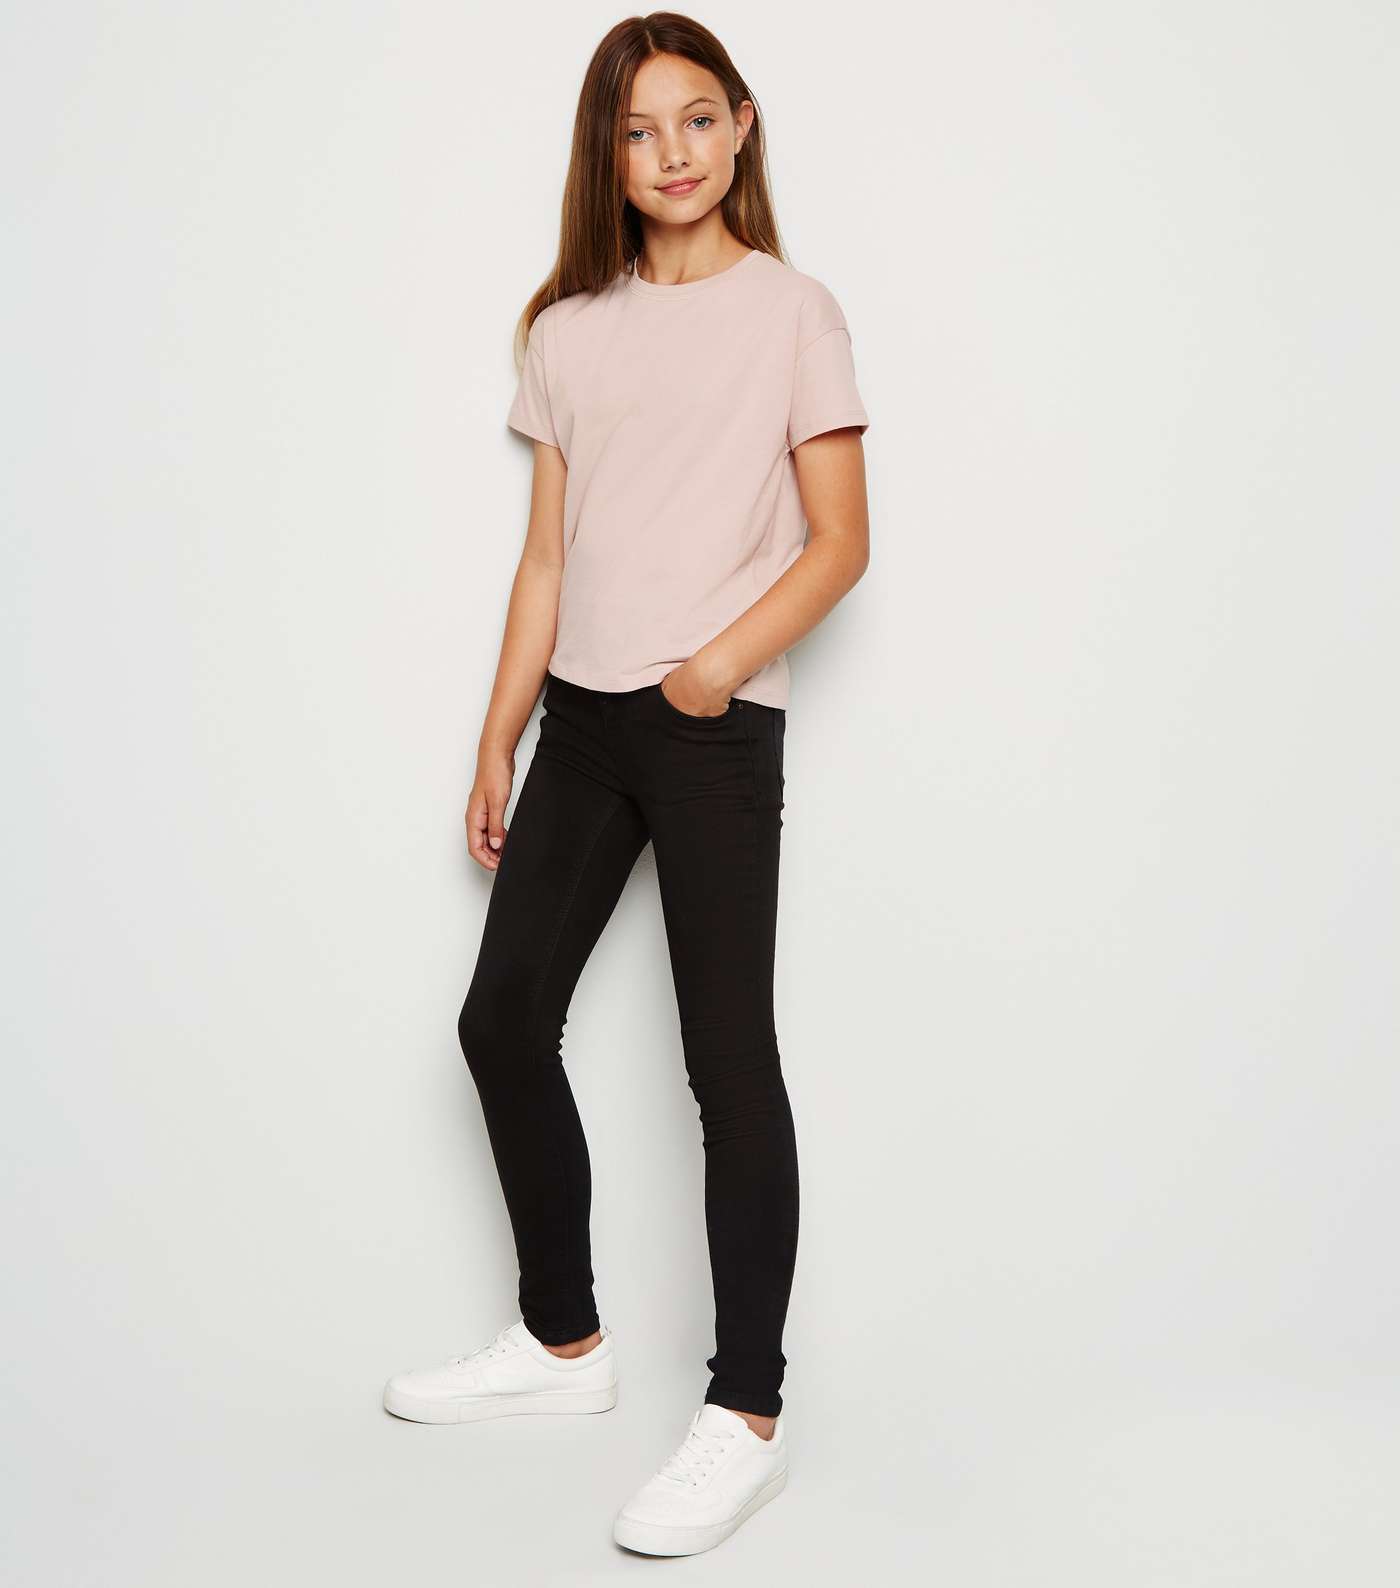 Girls Pale Pink Organic Cotton T-Shirt Image 2